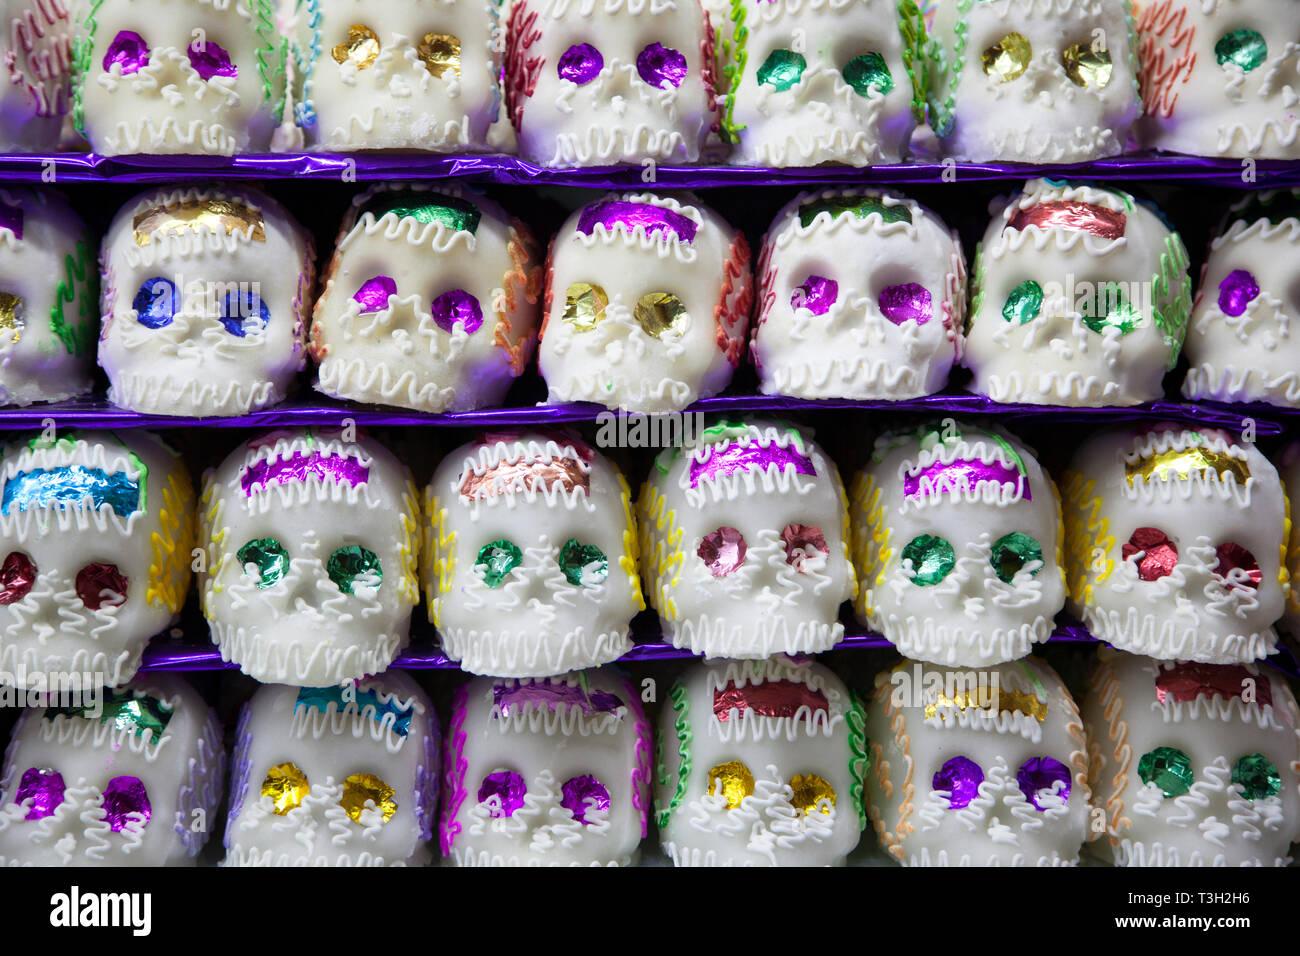 Un calavera, un crâne comestible fait de sucre dans tout le Mexique pour célébrer le jour des morts, ou Dia de los Muertos. Banque D'Images